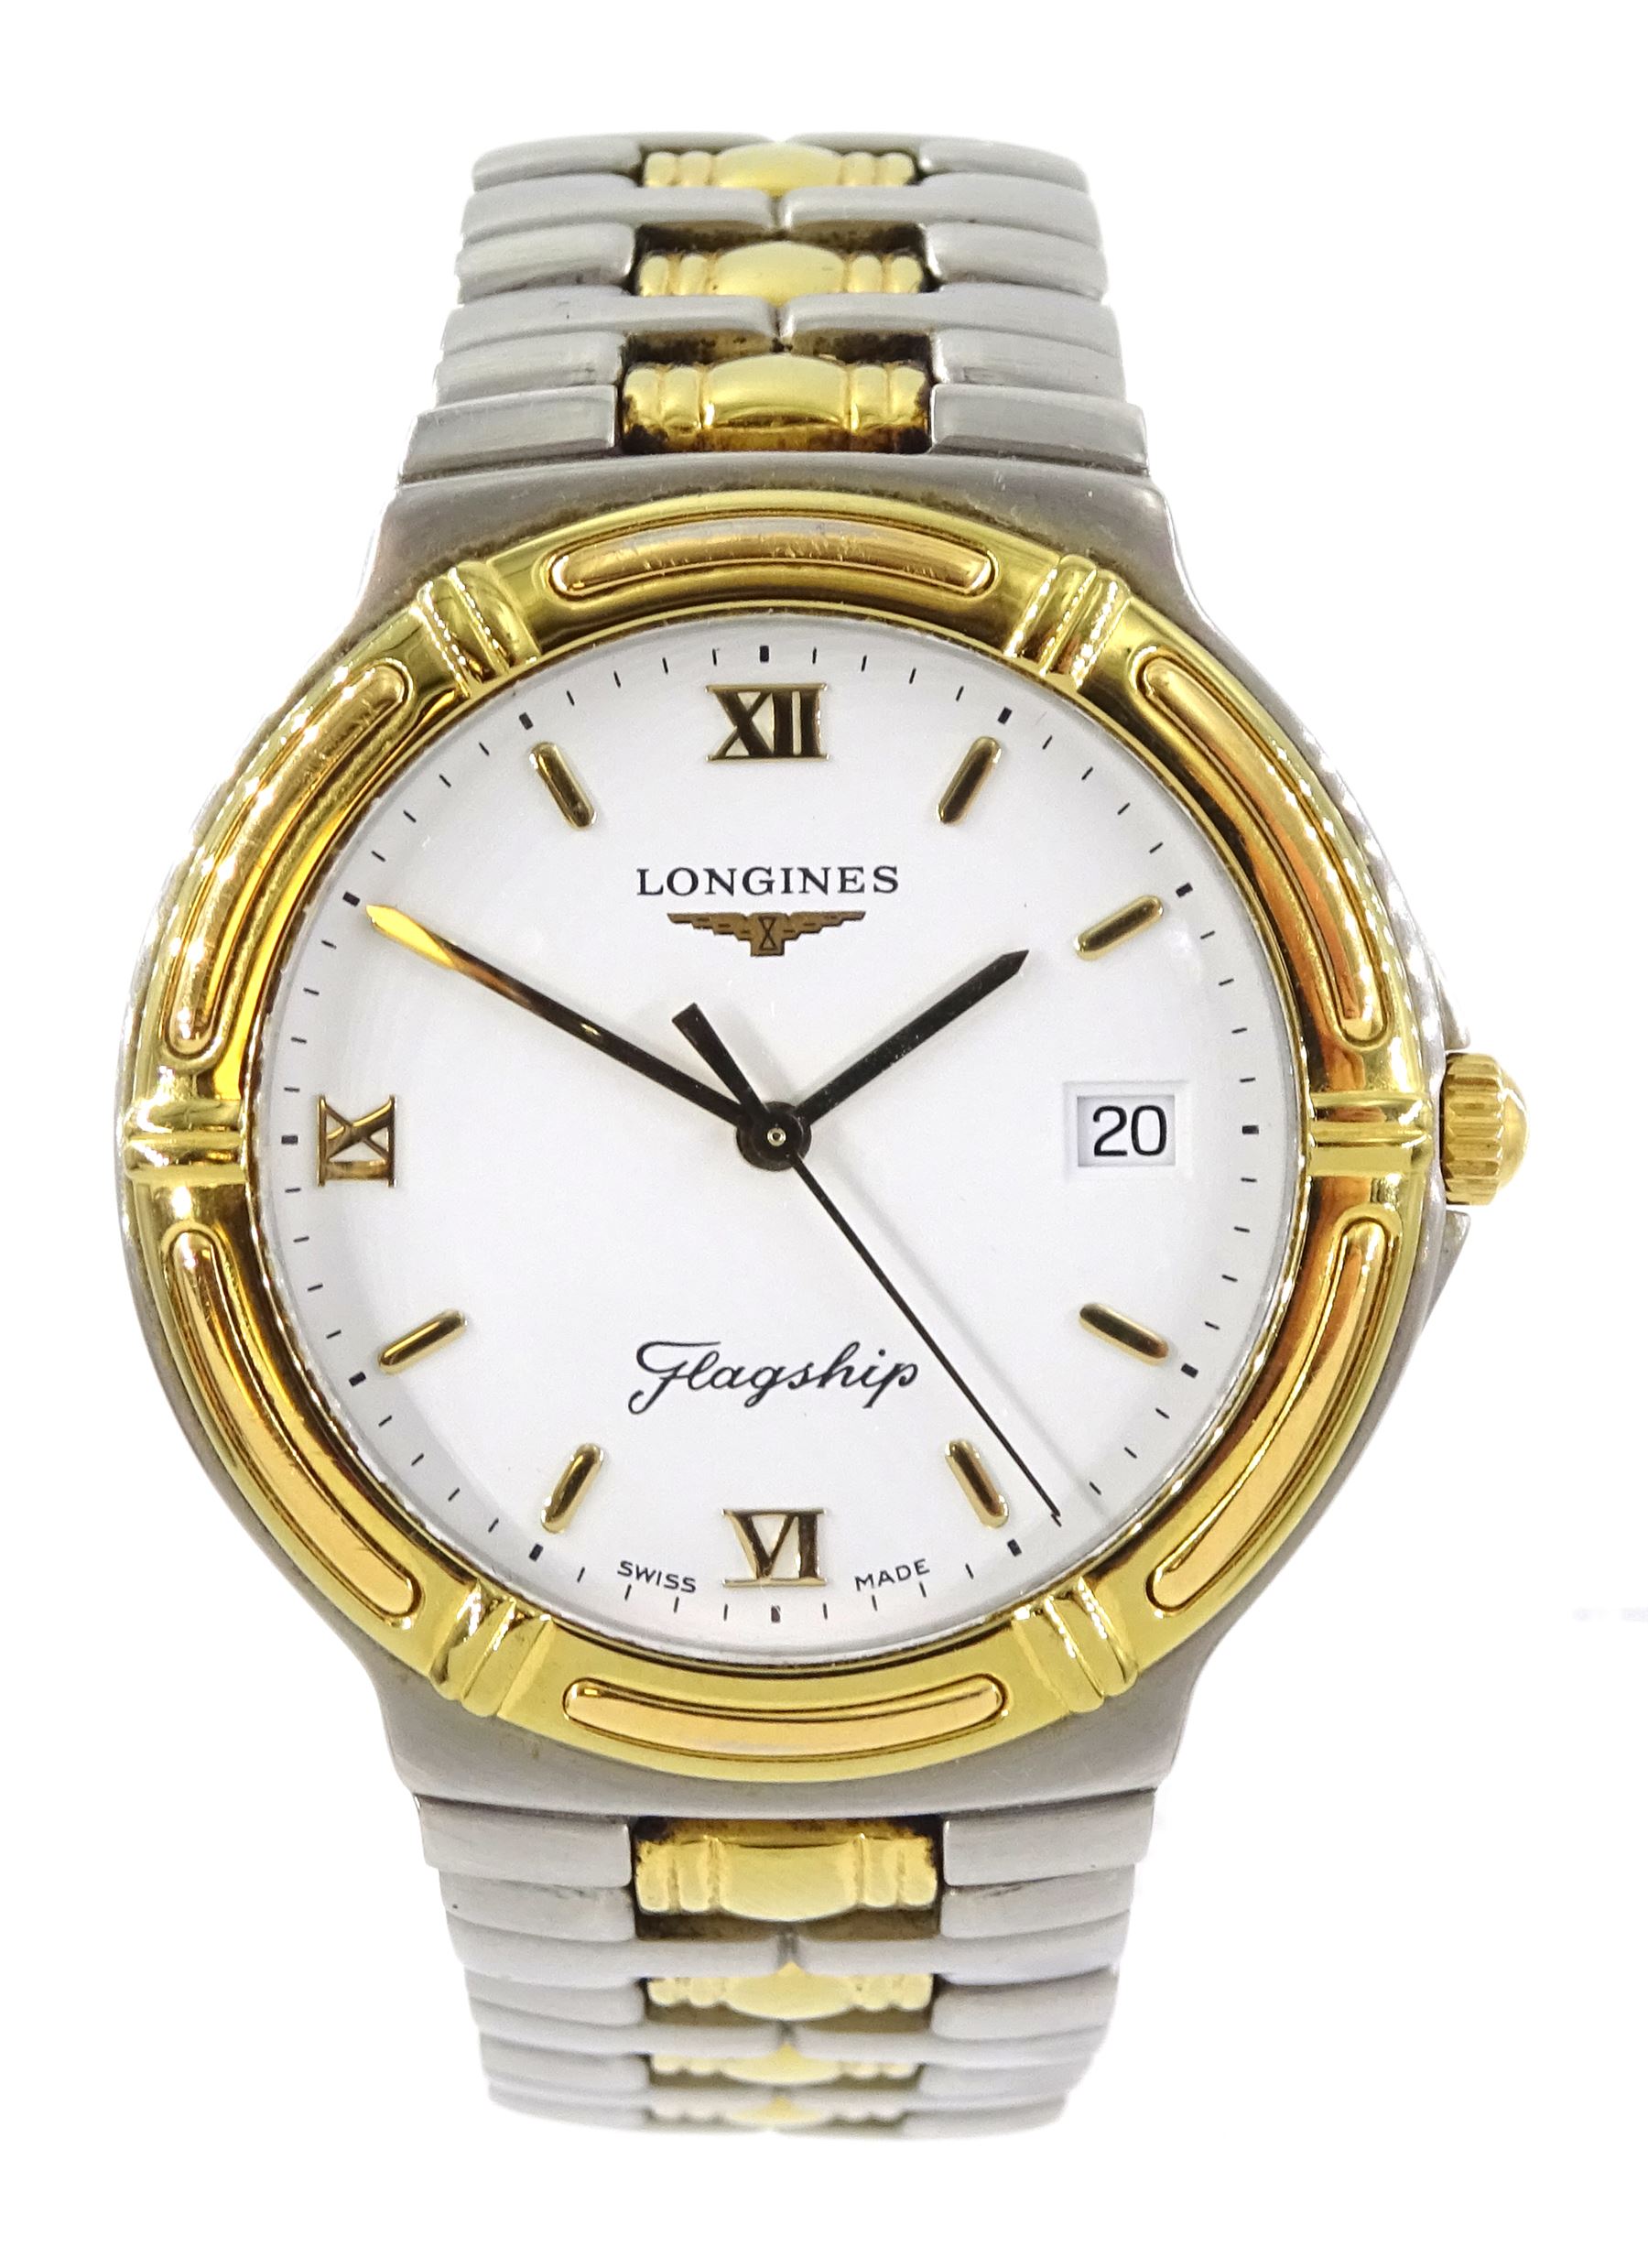 Longinges Flagship quartz two tone stainless steel bracelet wristwatch No. L5 651 3